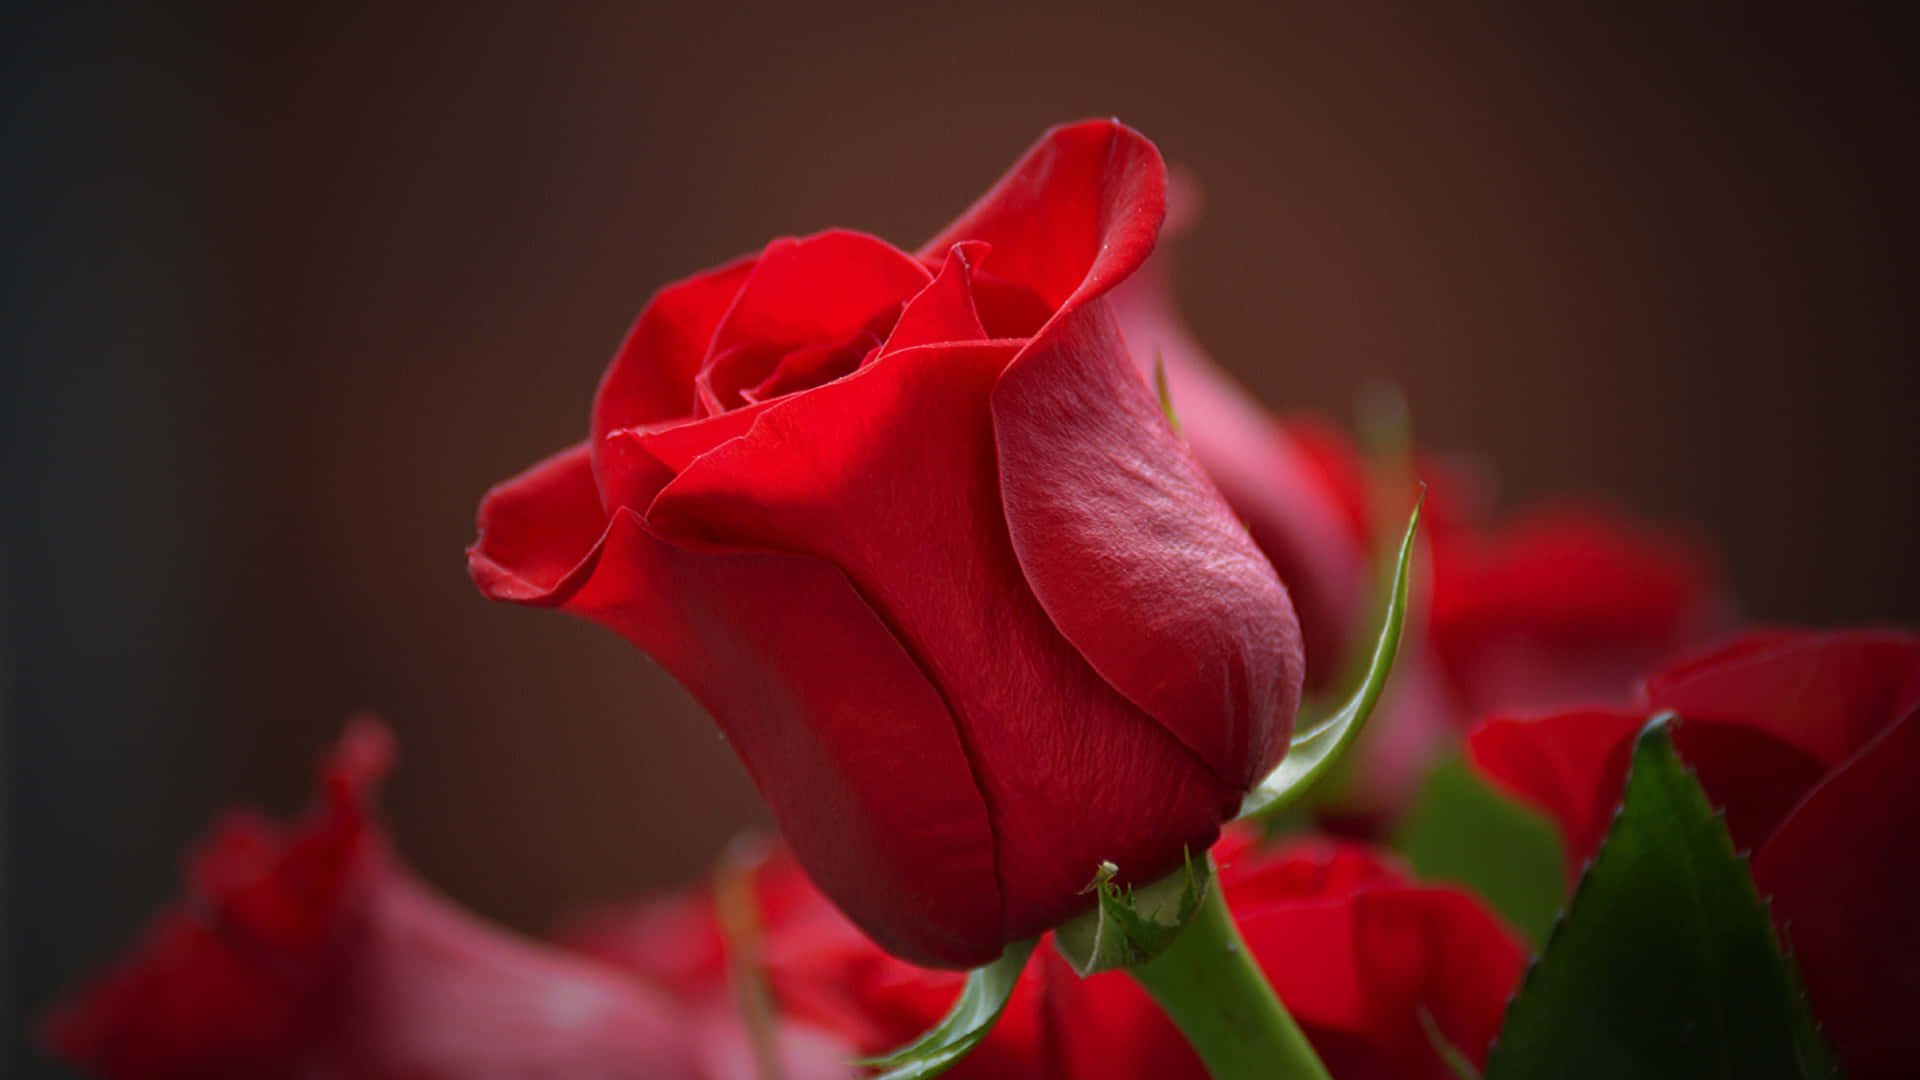 Caption: Romantic 1440p Roses in Full Bloom